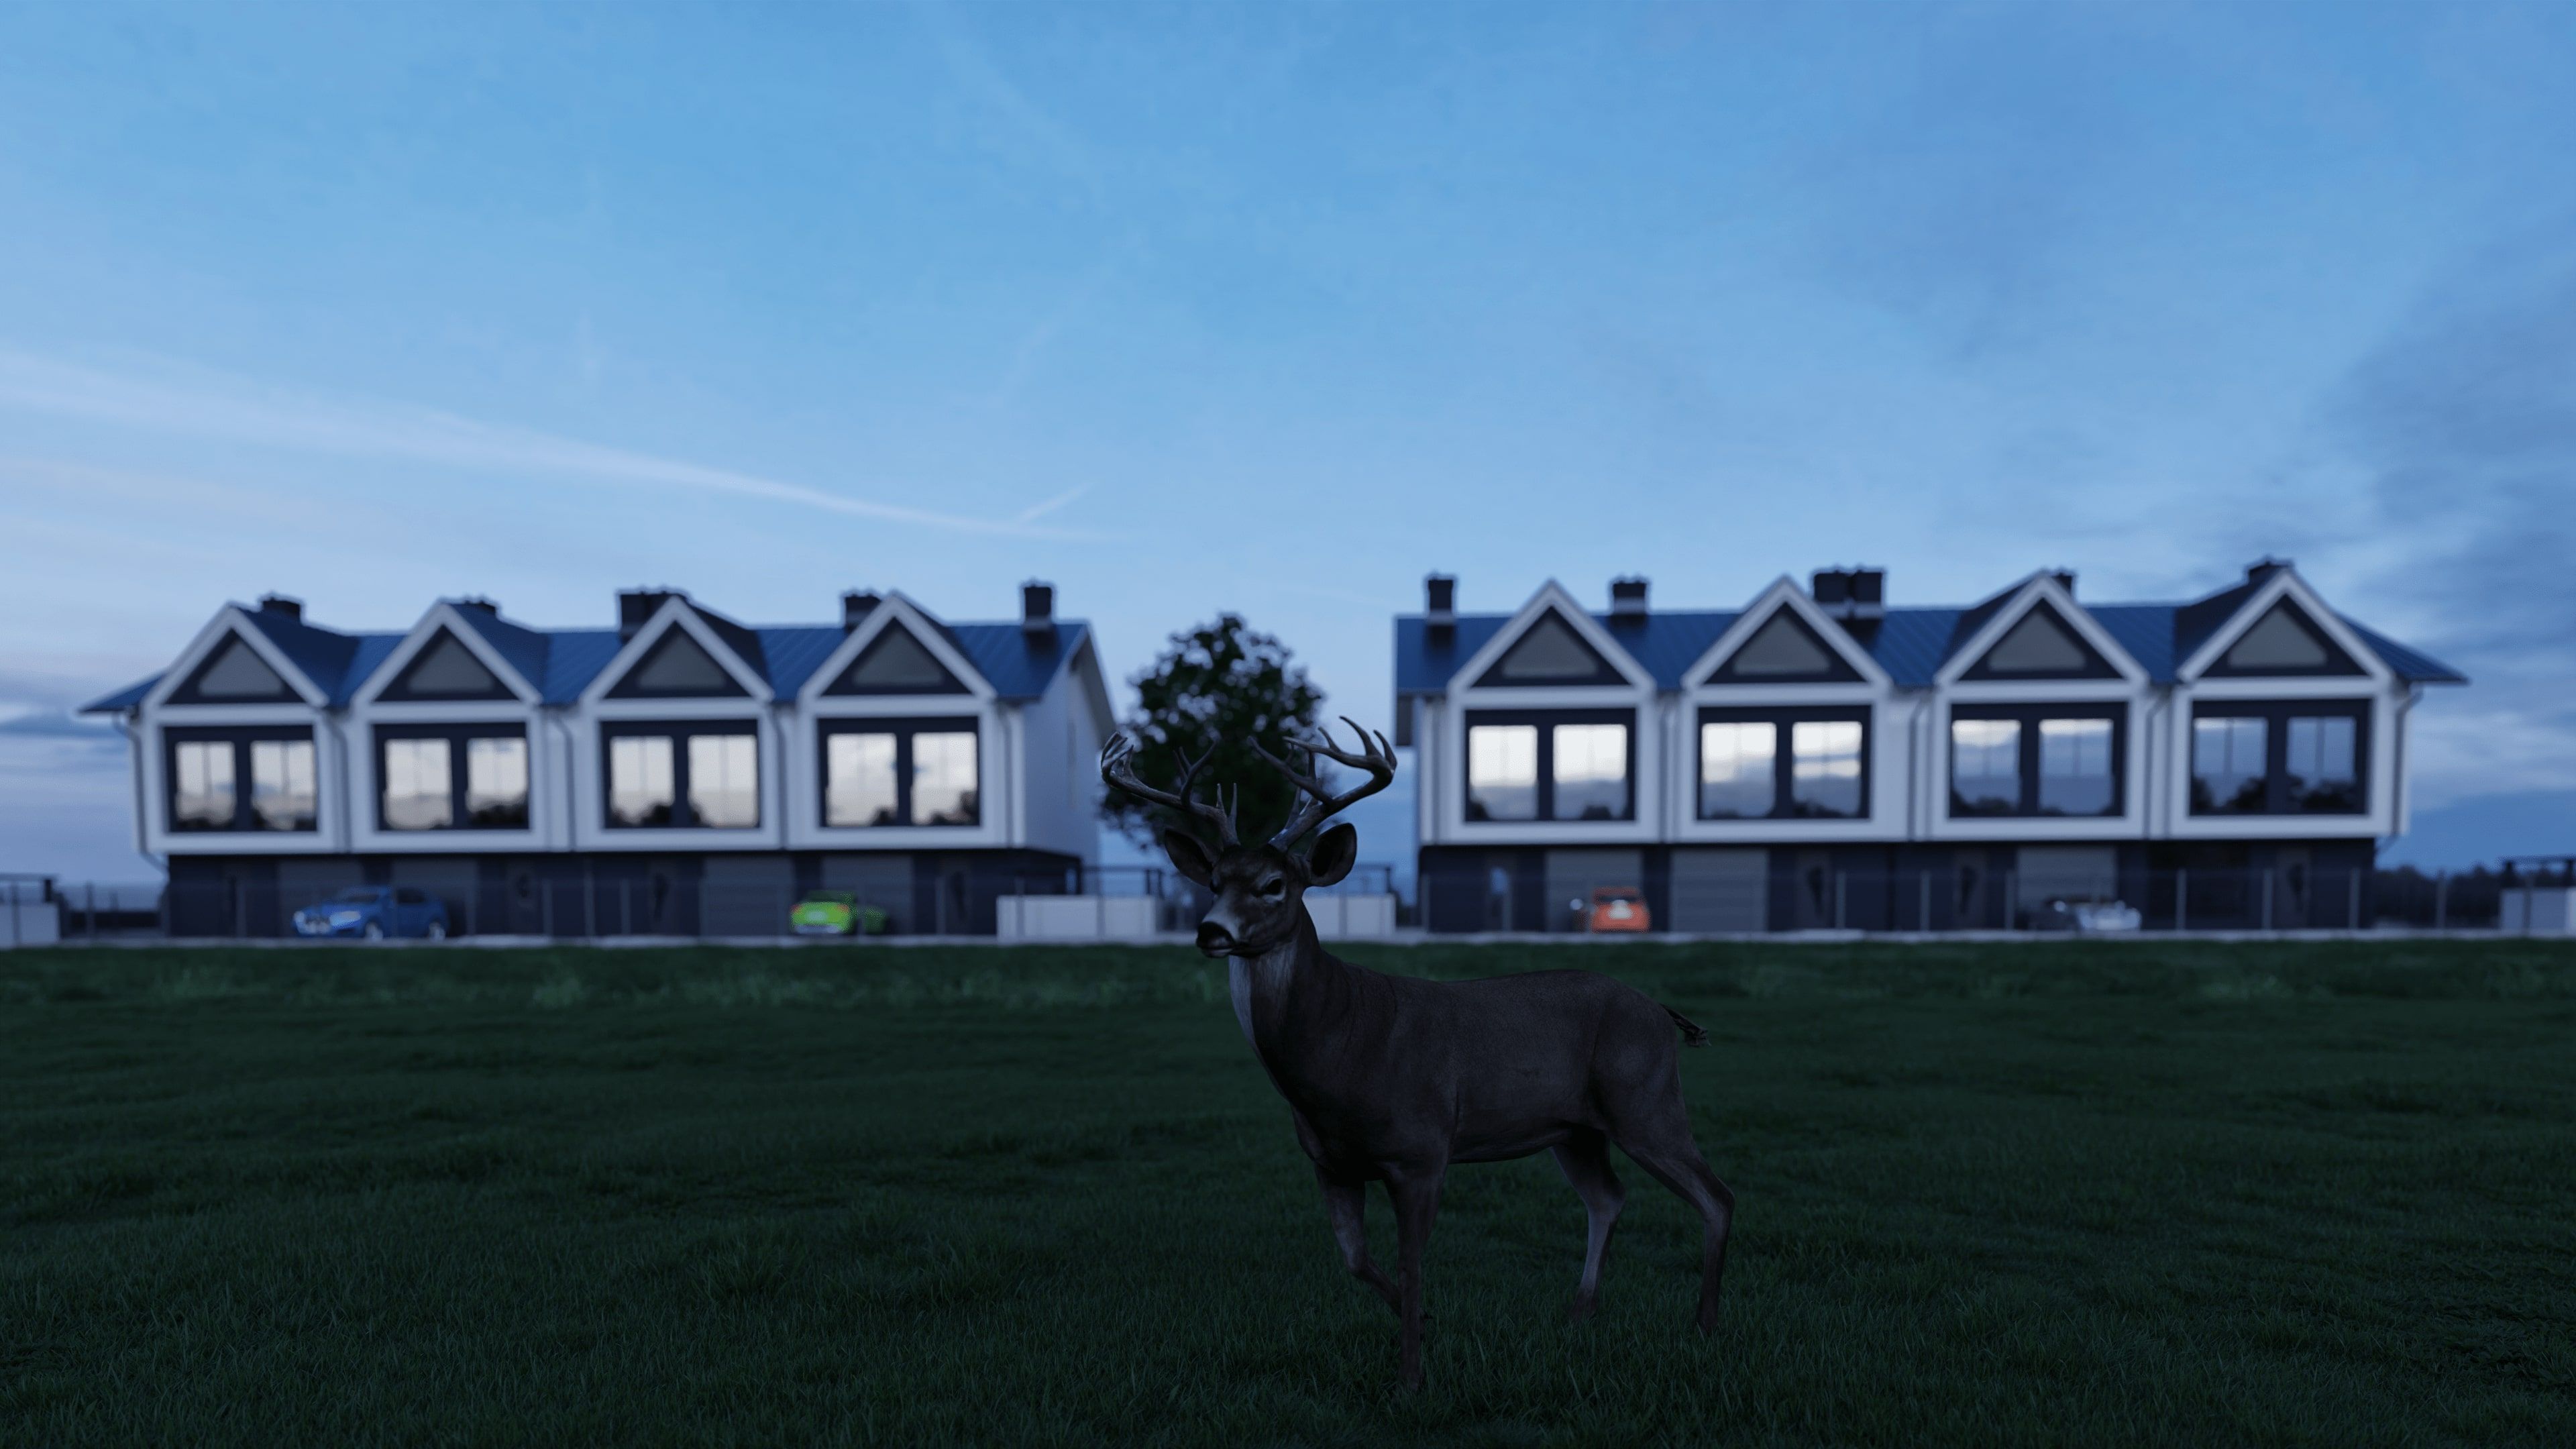 visualization-3d-neighborhood-with-deer-in-the-meadow.jpg